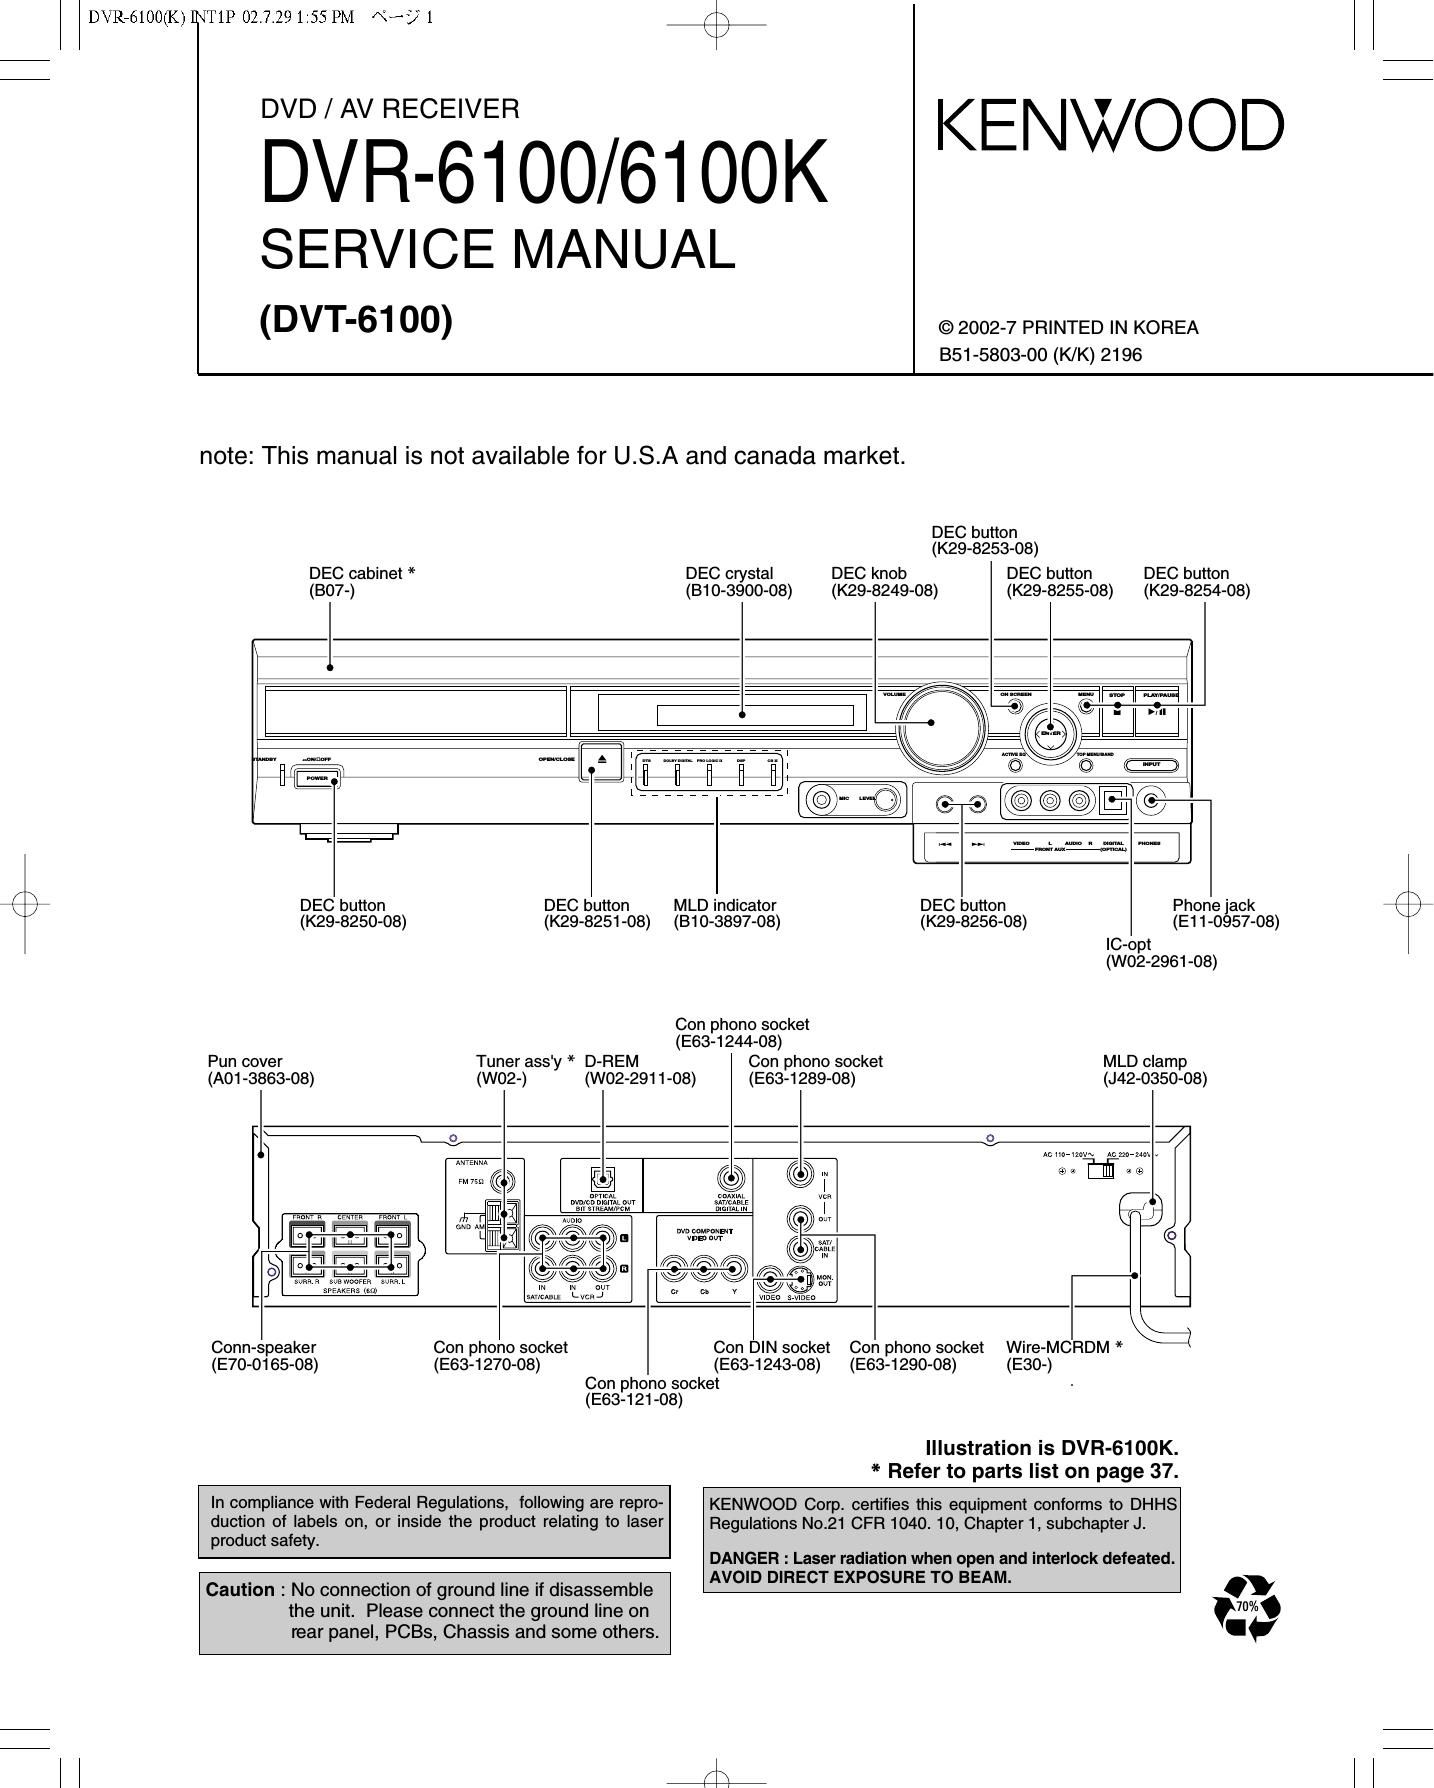 Kenwood DVR 6100 Service Manual